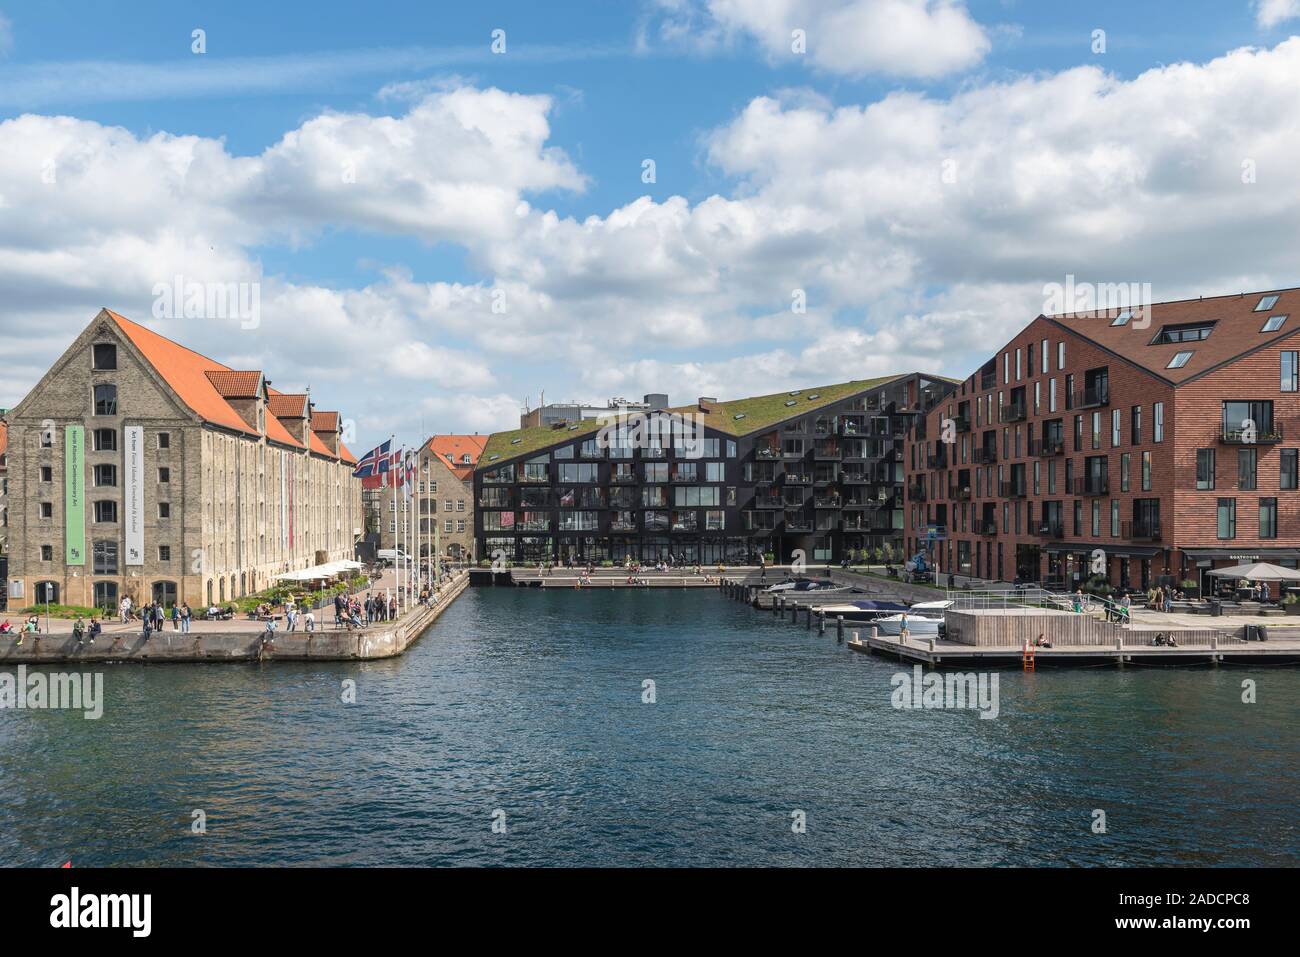 L'architecture de Copenhague, le contraste de styles aux 19e siècle Nordatlantens Brygge (à gauche) et moderne (à droite) Krøyers Plads, Christiania, Copenhague. Banque D'Images